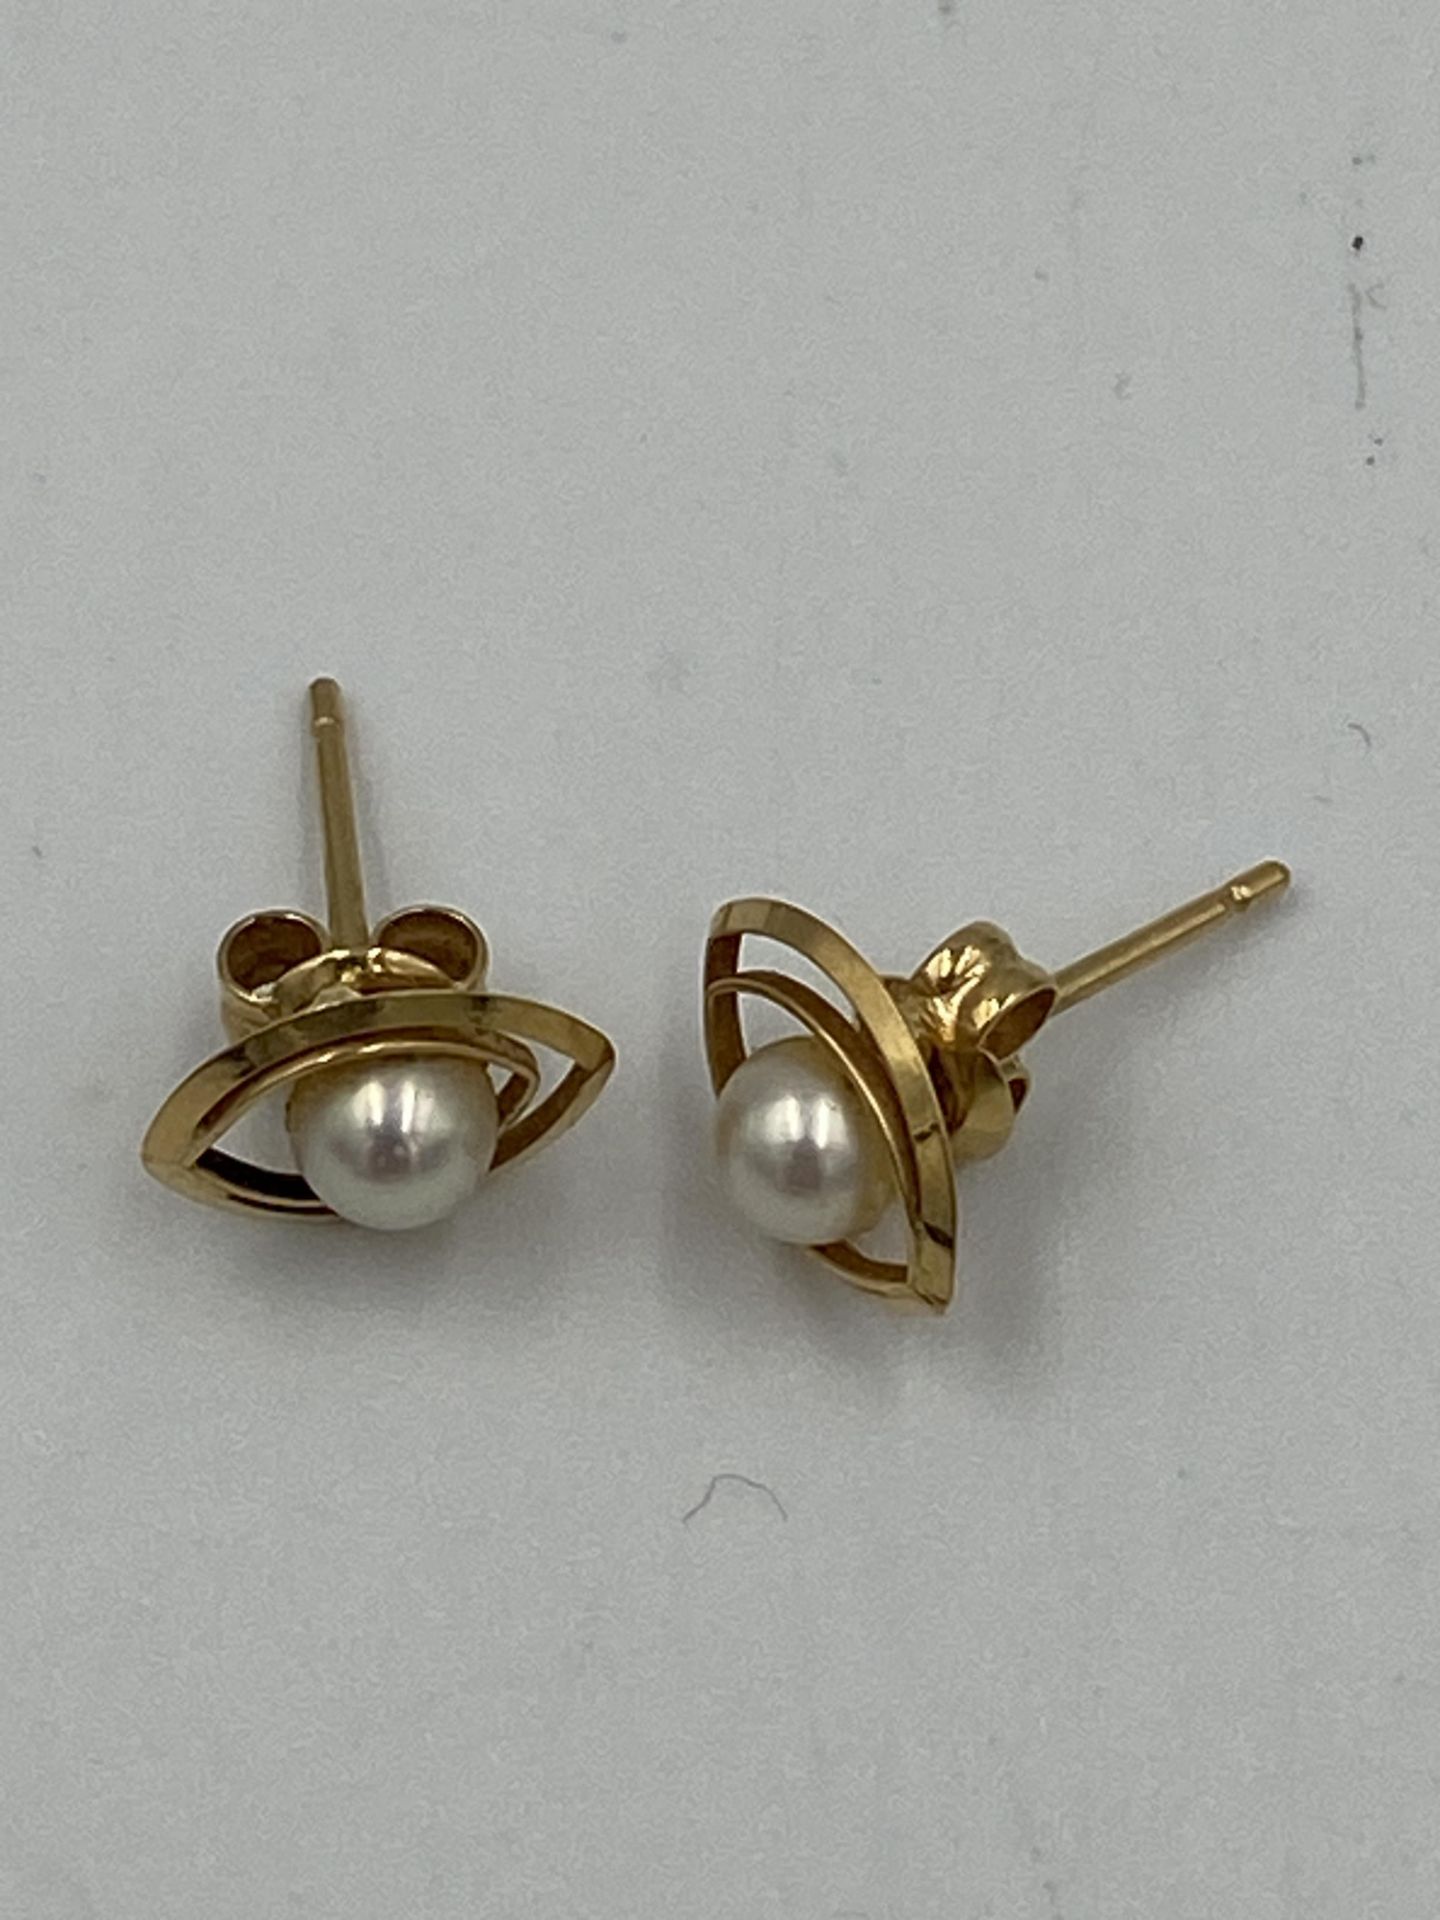 Pair of 18ct pearl earrings - Image 2 of 4